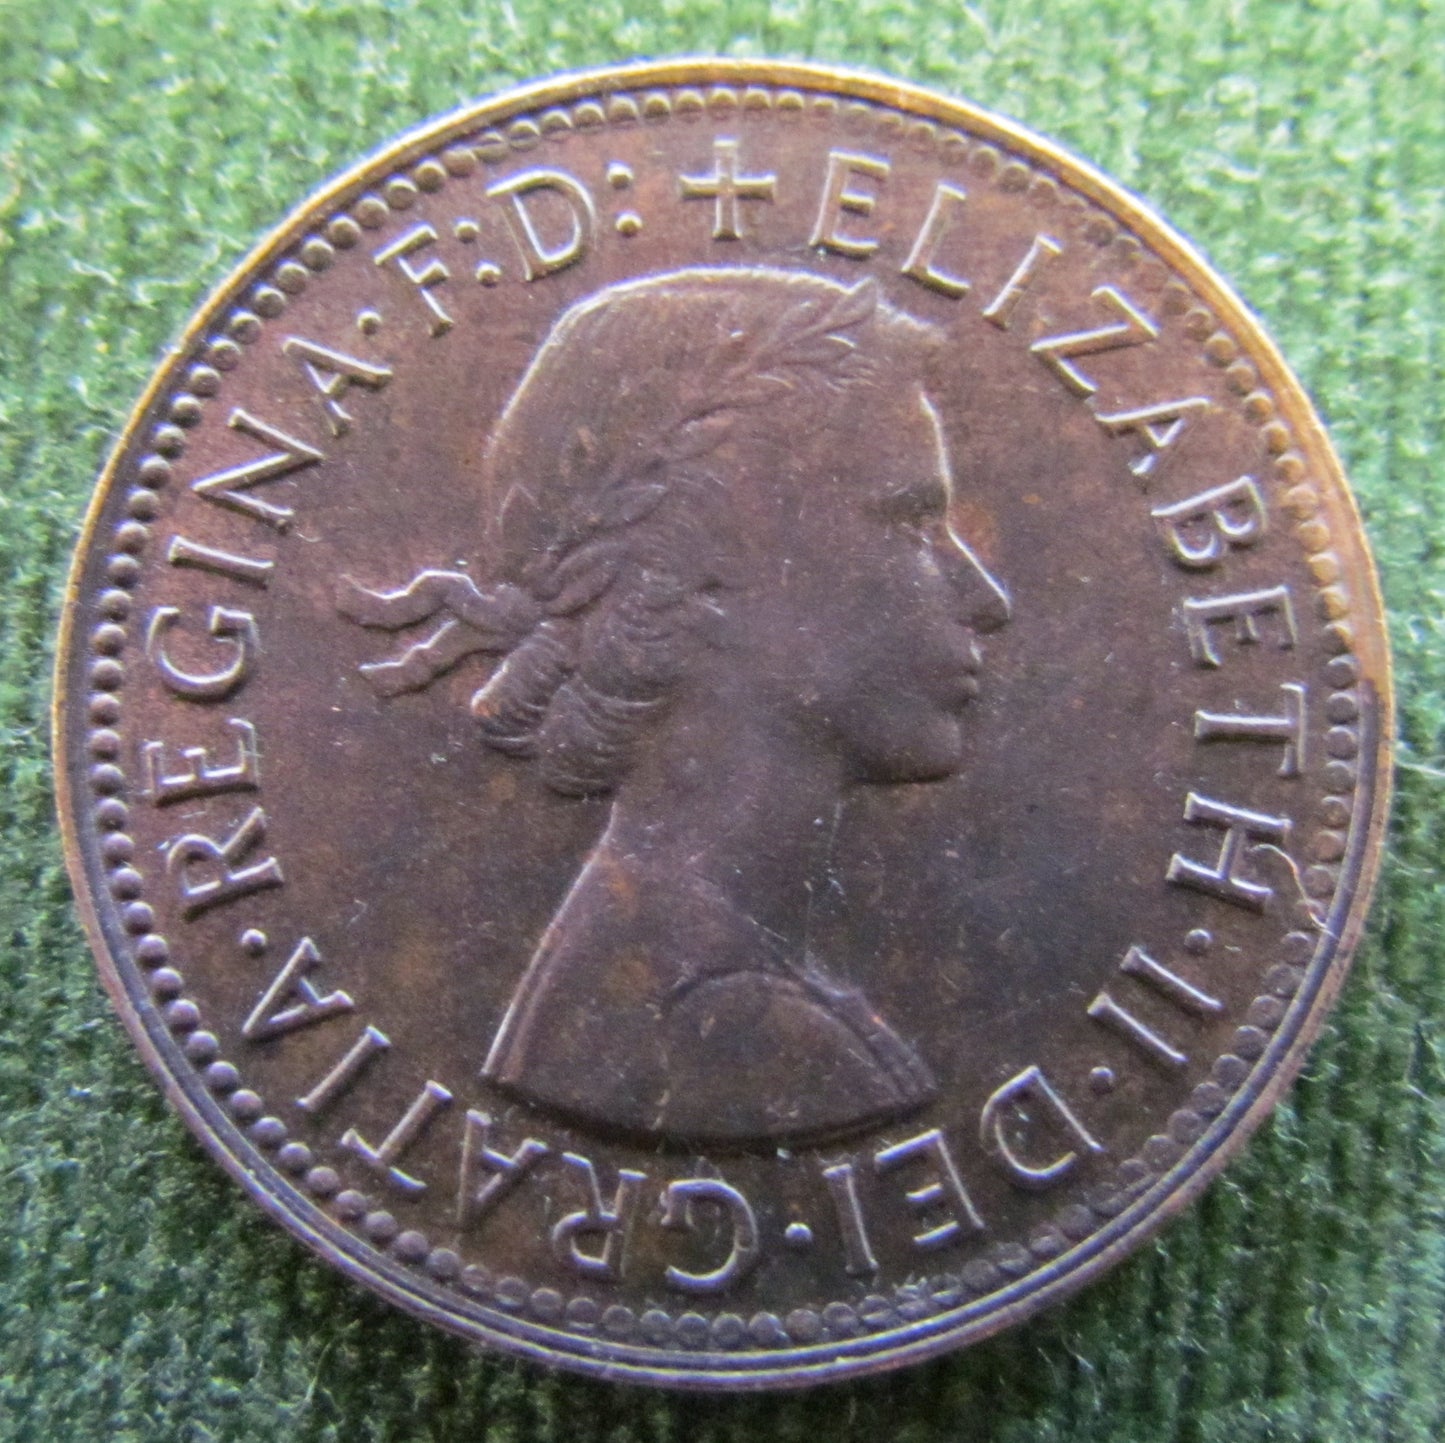 Australian 1959 1/2d Half Penny Queen Elizabeth II Coin - High Grade